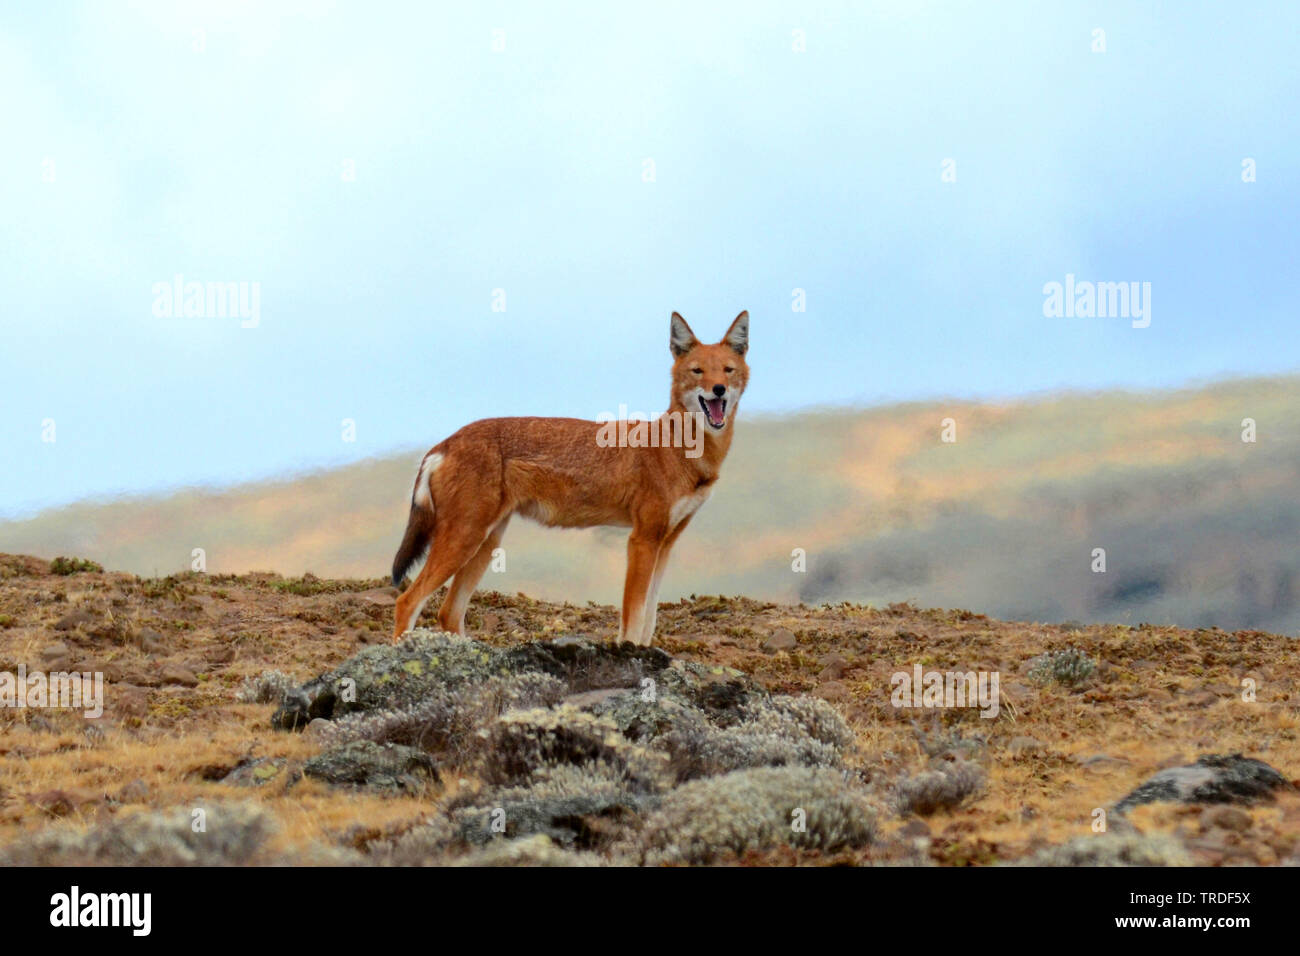 Simien Schakal, äthiopischen Wolf, Simien fox (Canis simensis), eine vom Aussterben bedrohte raubtier endemisch im äthiopischen Hochland., Äthiopien, Bale Mountains Nationalpark Stockfoto